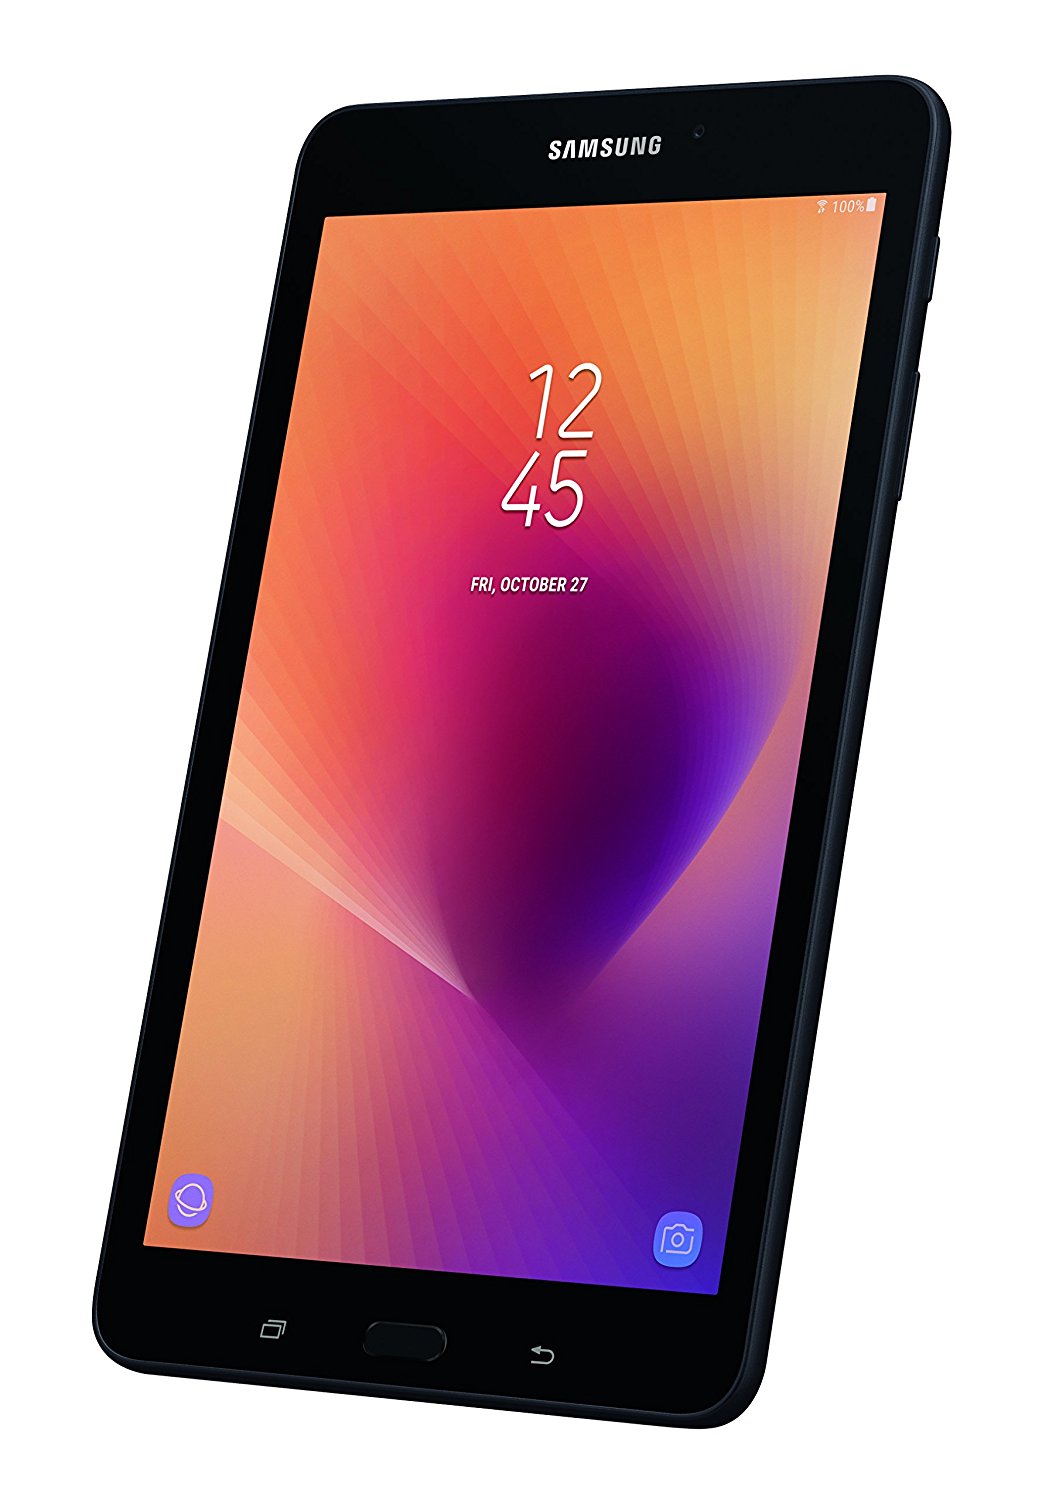 Samsung Galaxy Tab A 8" 32 GB Wifi Tablet (Black) - SM-T380NZKEXAR